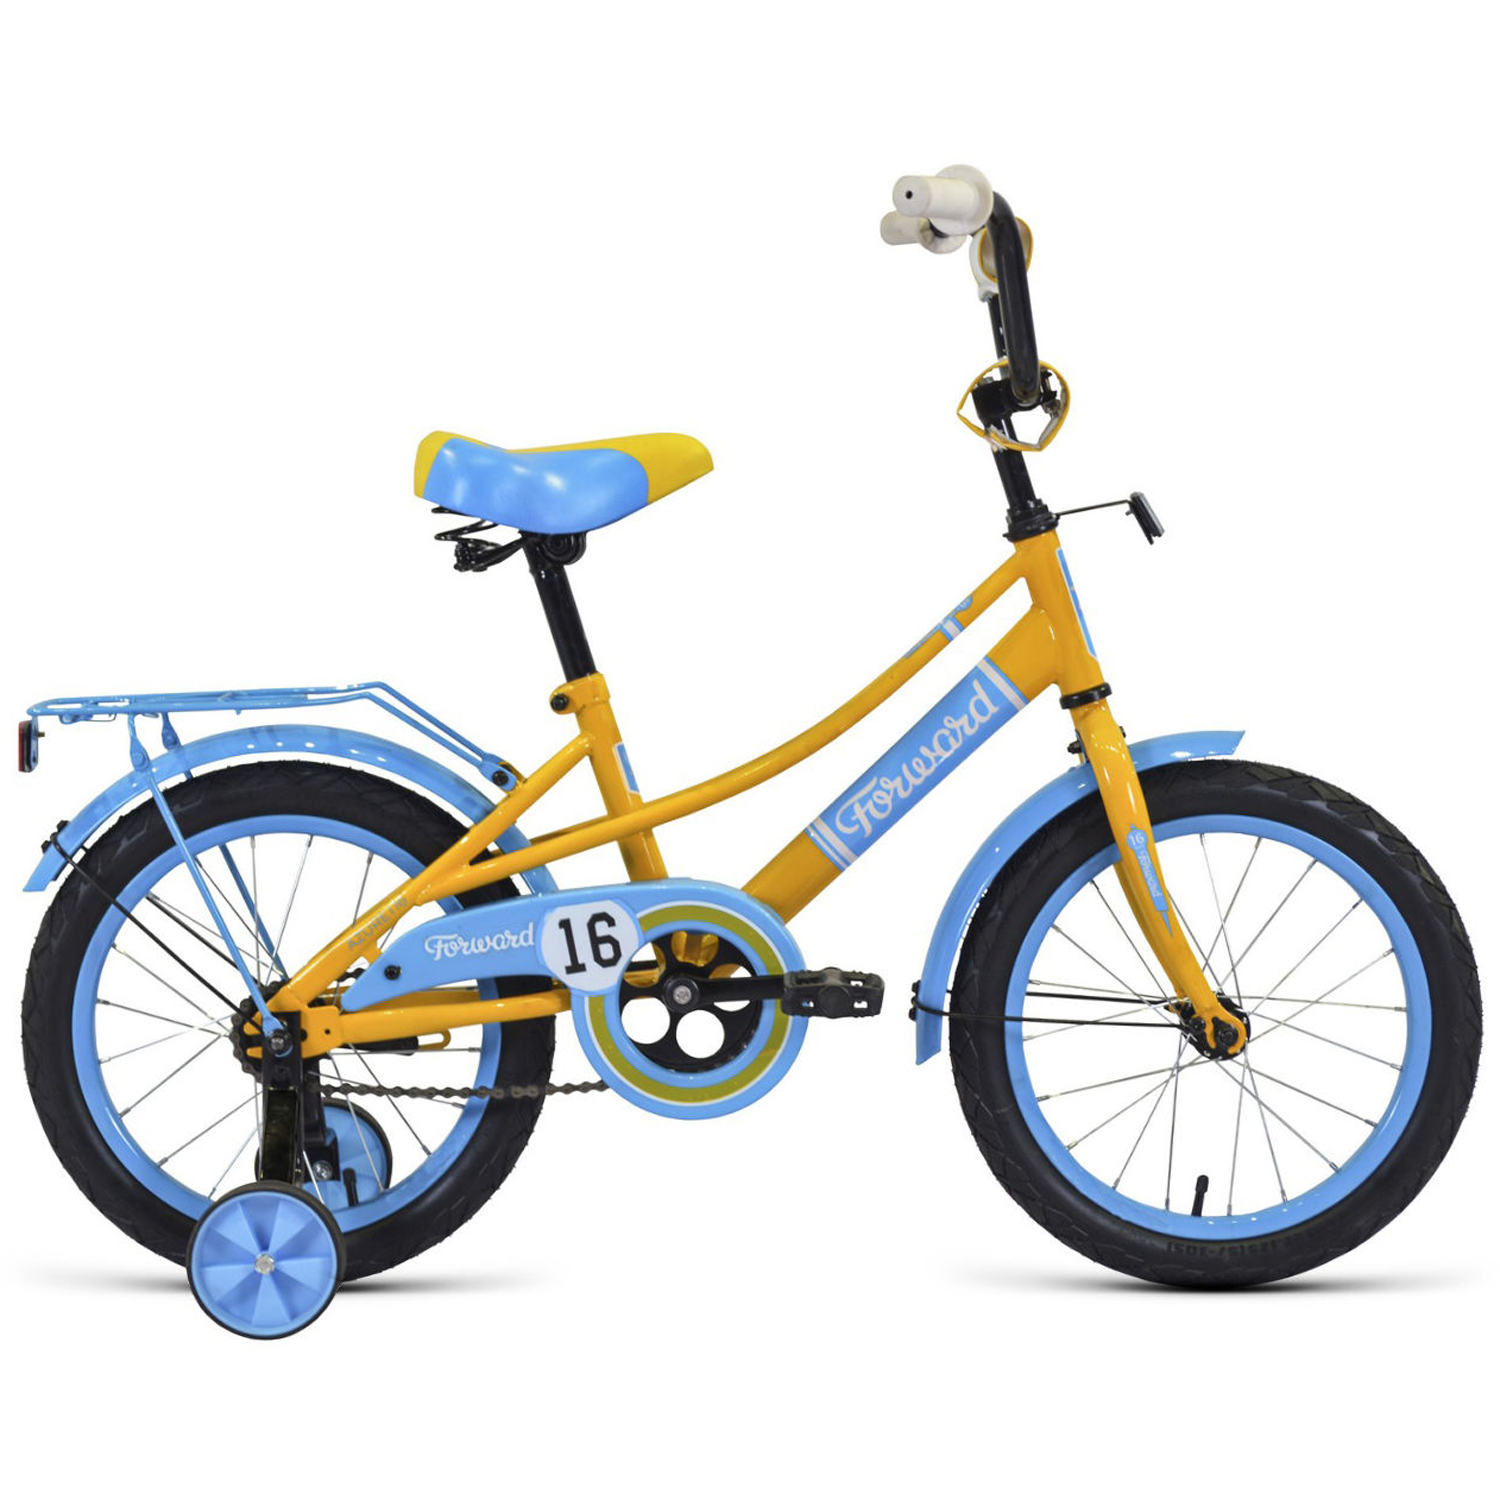 Двухколесный велосипед Forward Azure 16 2021, желтый/голубой двухколесный велосипед forward azure 16 2021 коралловый голубой